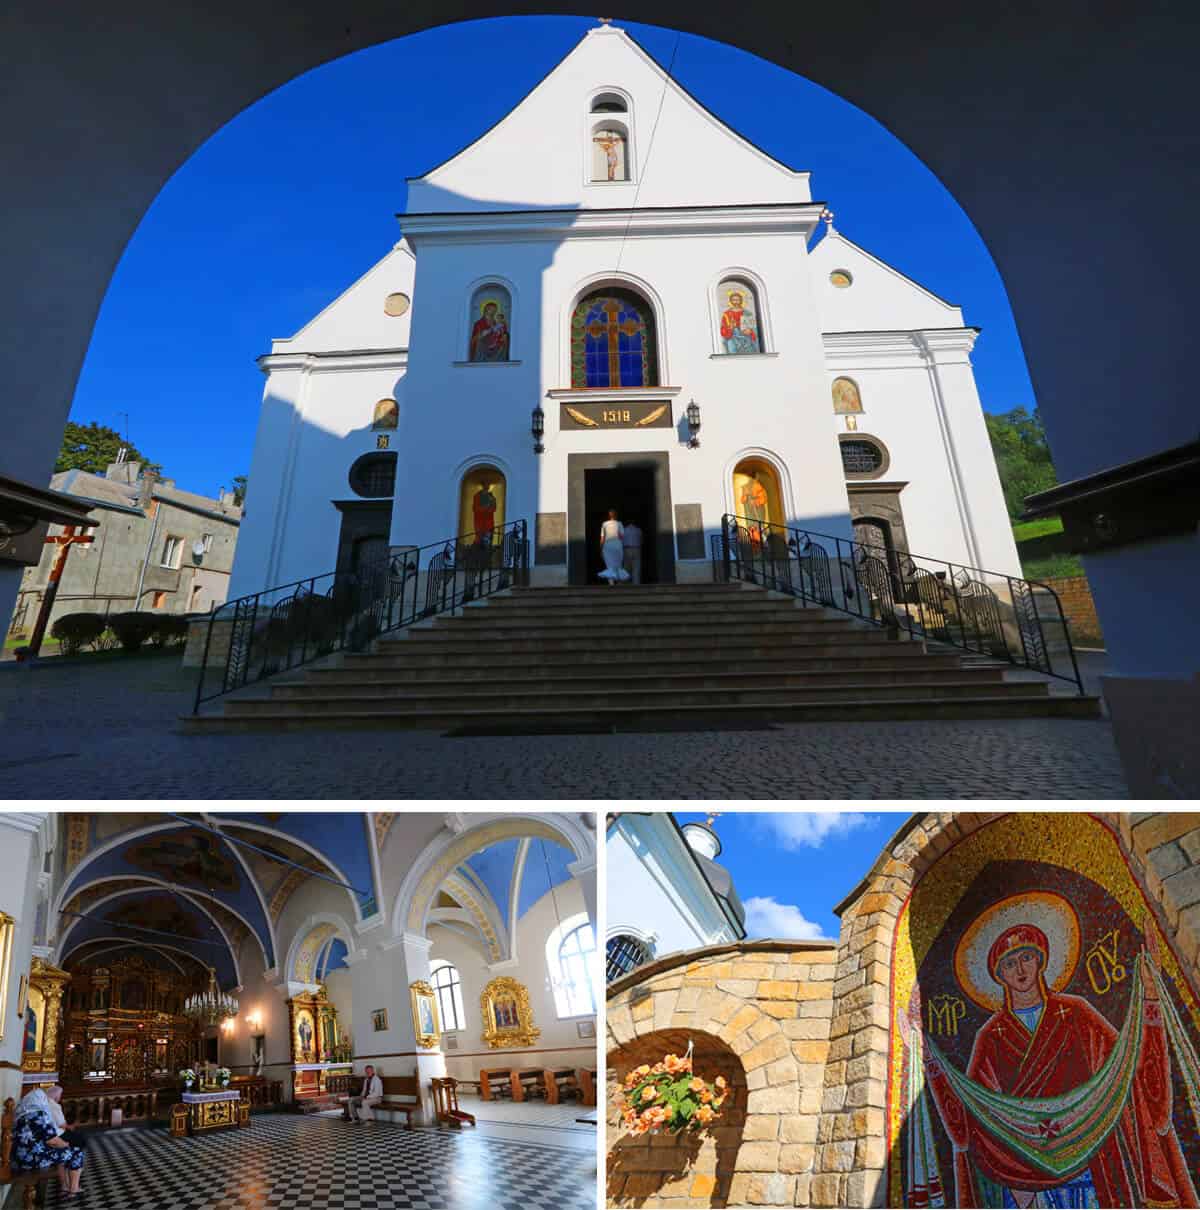 St. Onuphrius’s Church and Monastery, Ukraine